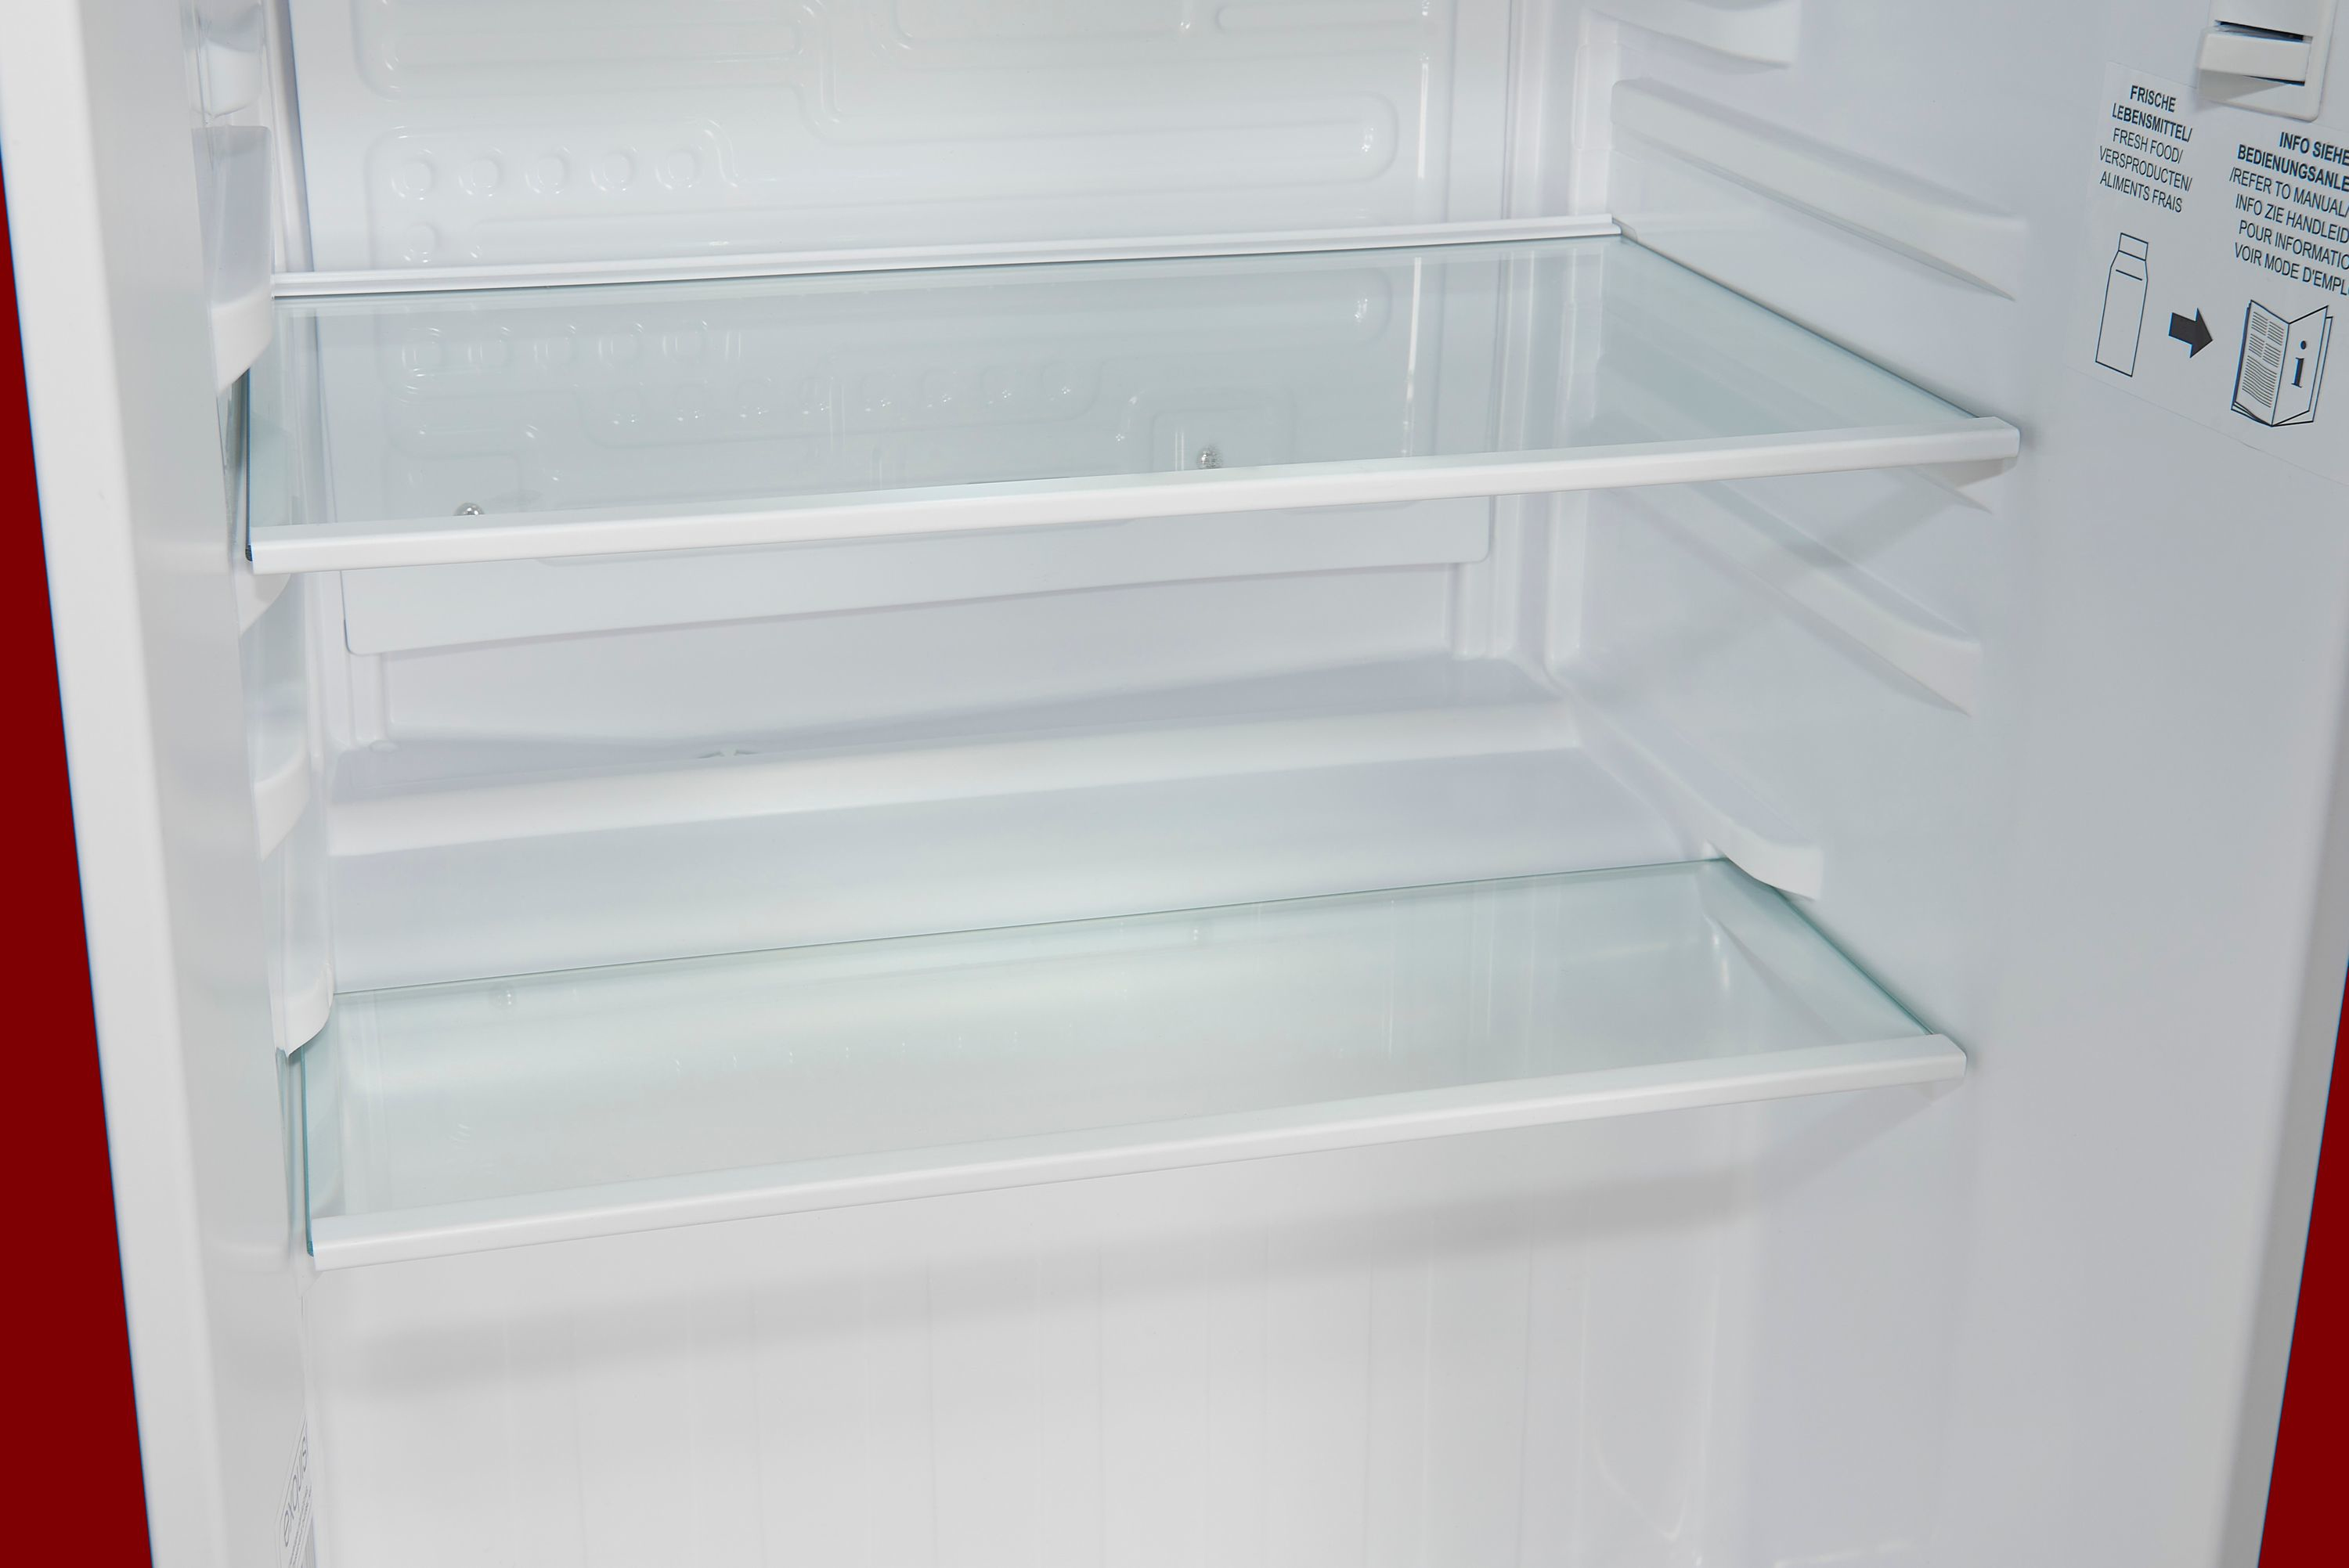 Exquisit KB60-V-090E Kühlschrank | E 52 TECMONDO Kühlen Freistehend Kühlschränke | | & Standgeräte Küche Rot Haushalt | & Gefrieren | l